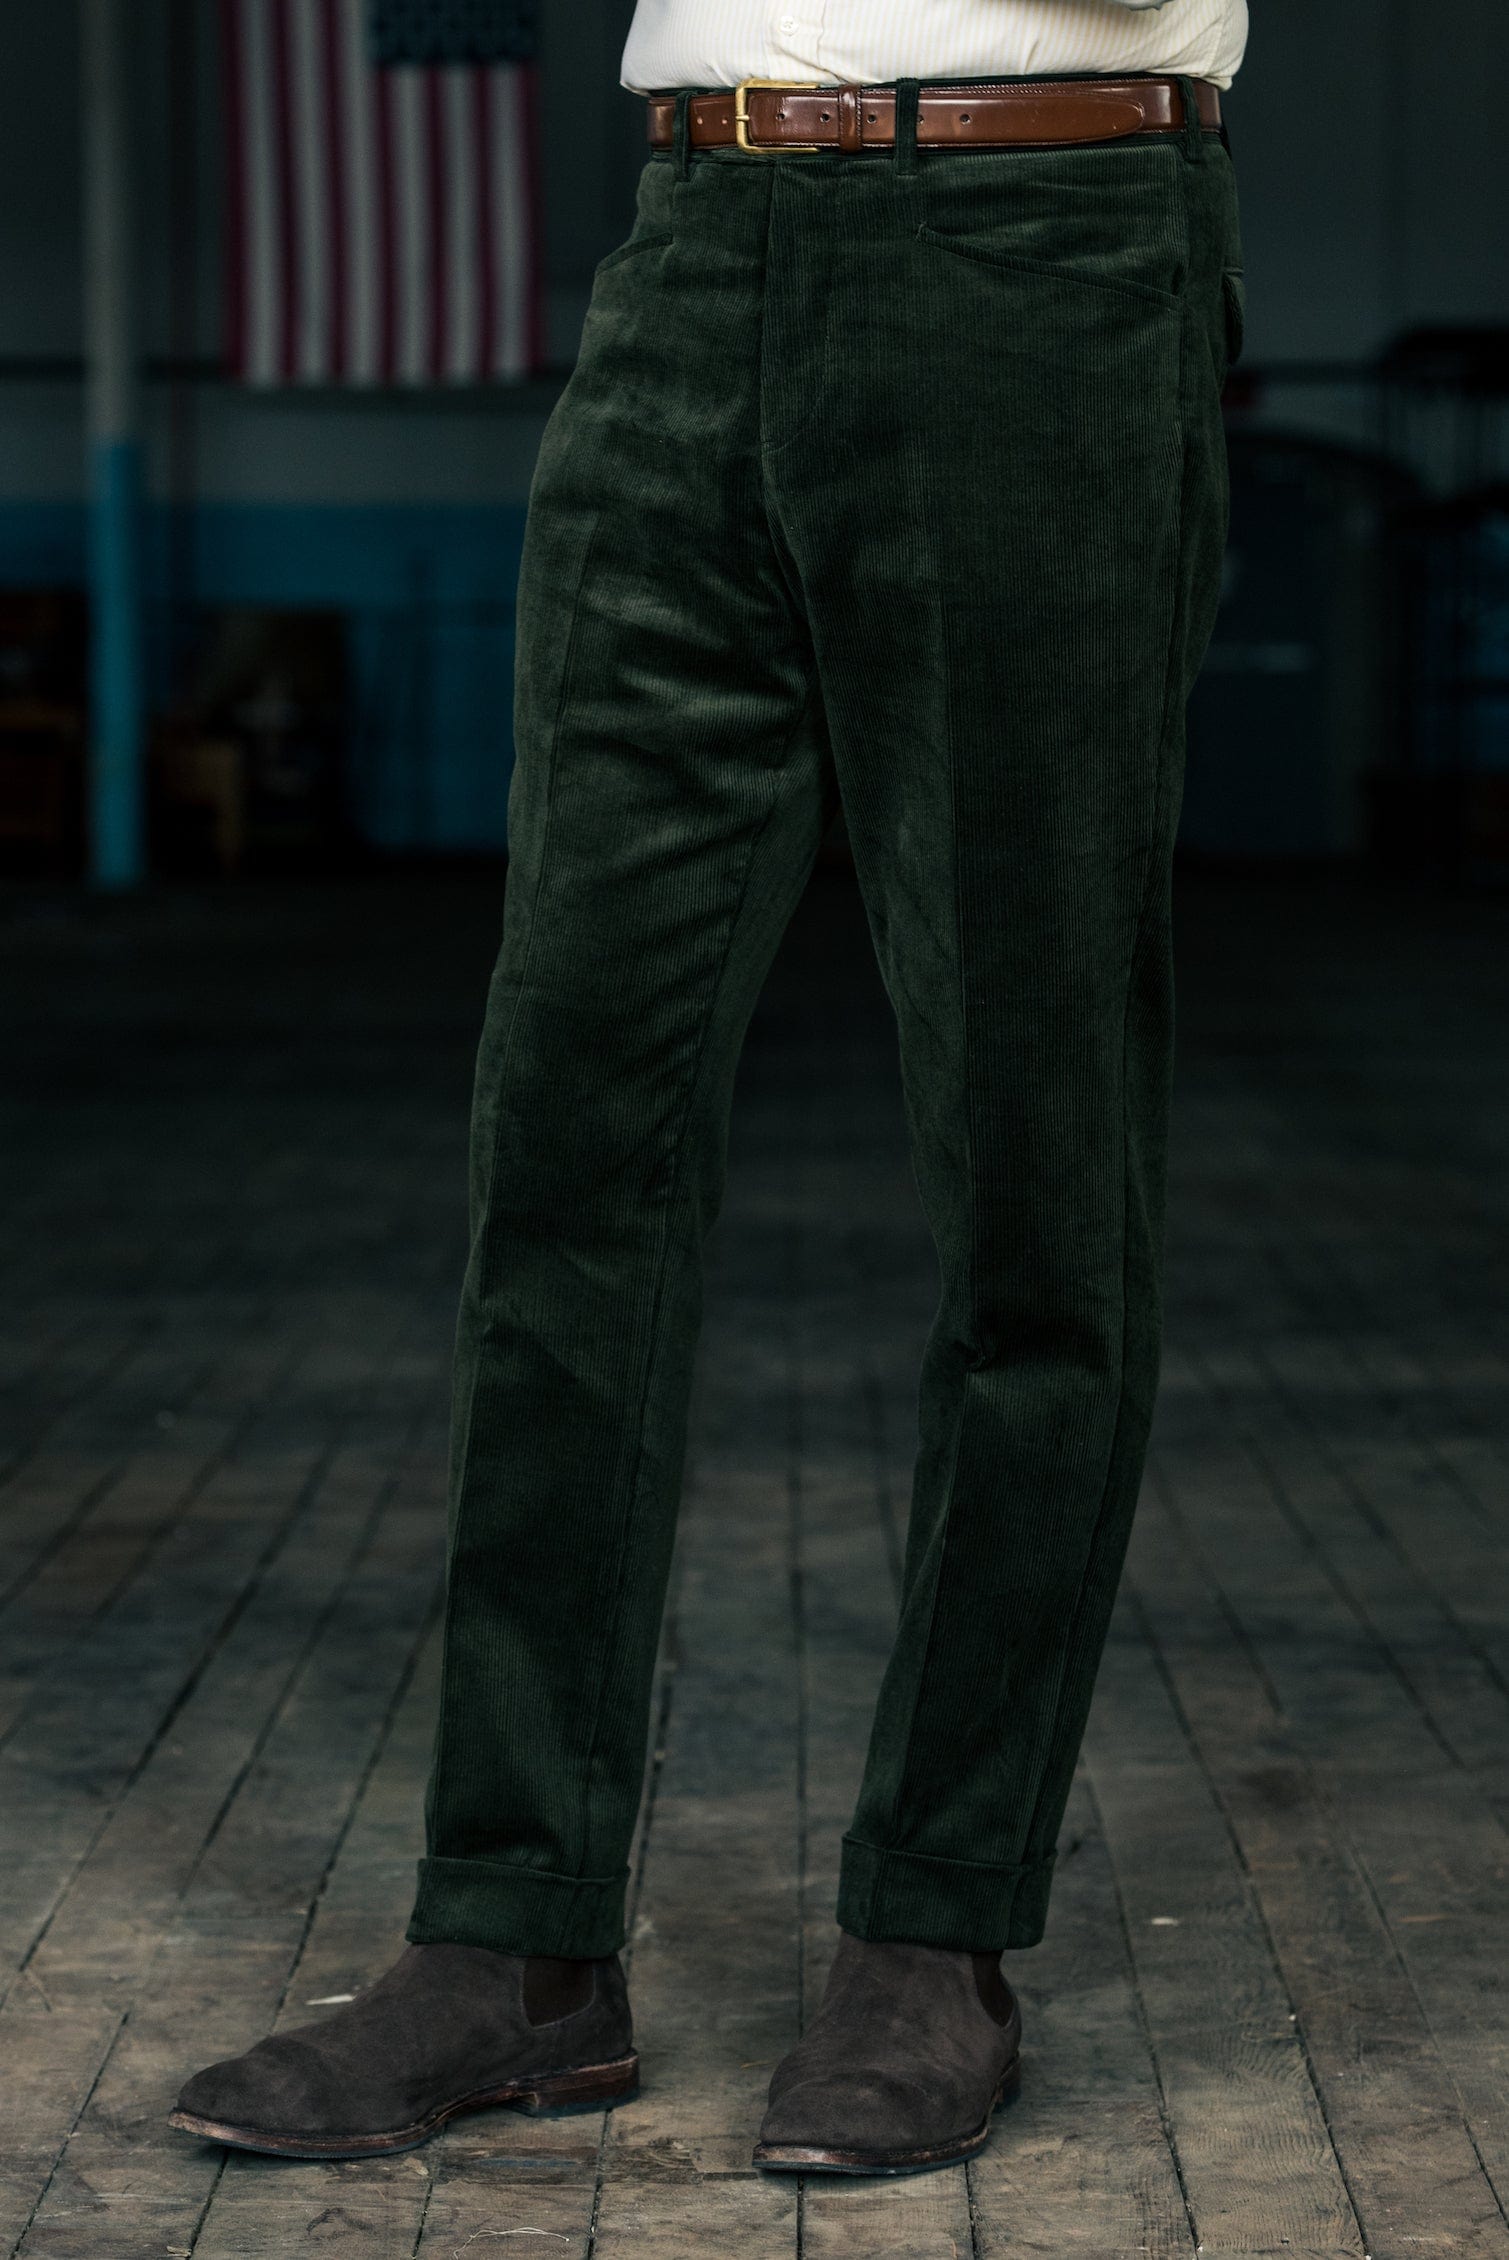 Grey Magnet Colour Formal Trousers for Men - Elite Trouser by Aristobrat